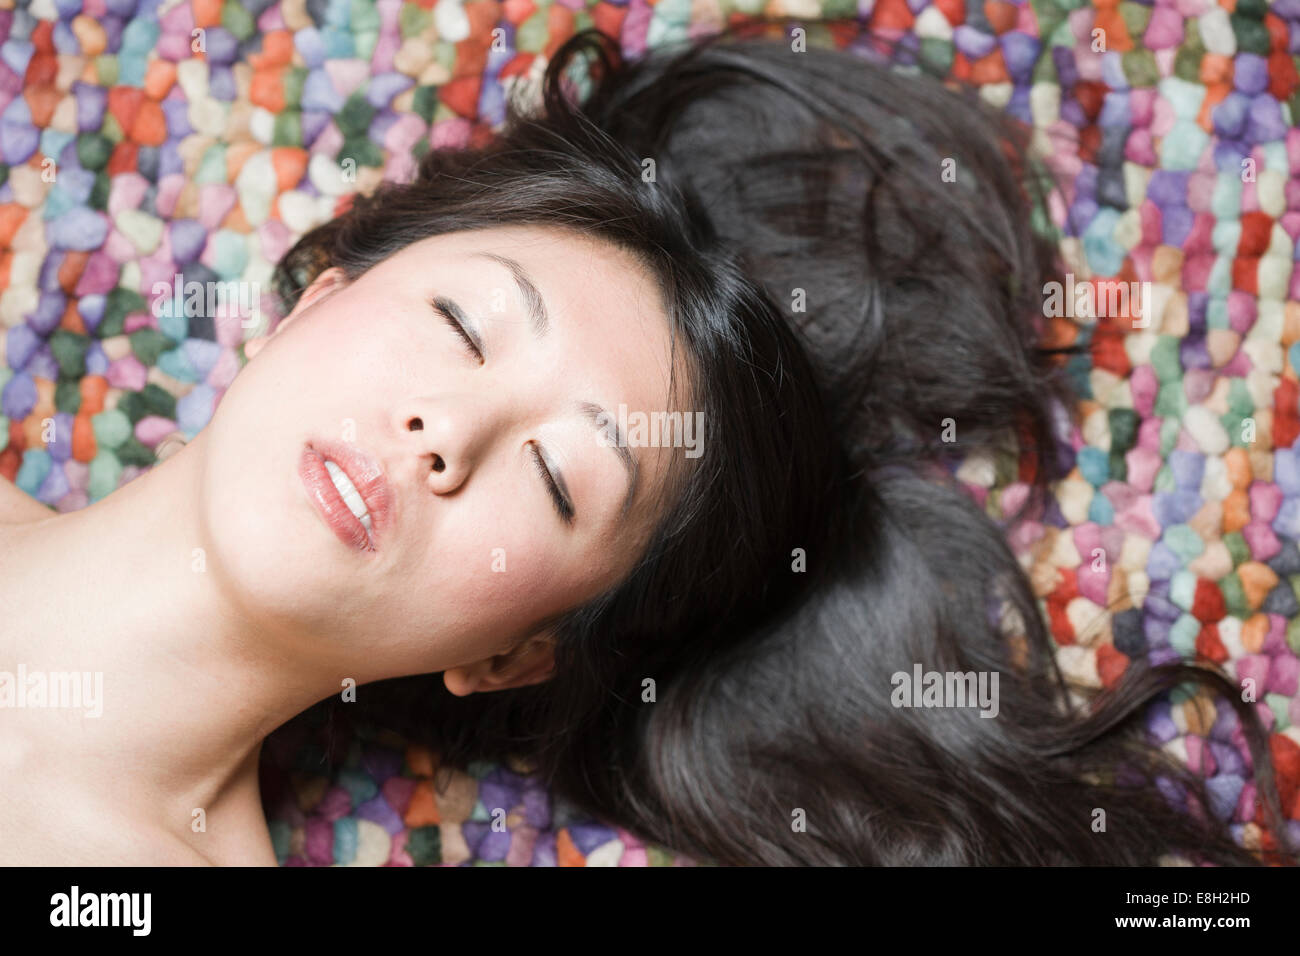 Ritratto di donna asiatica con gli occhi chiusi di fronte a terra colorata Foto Stock